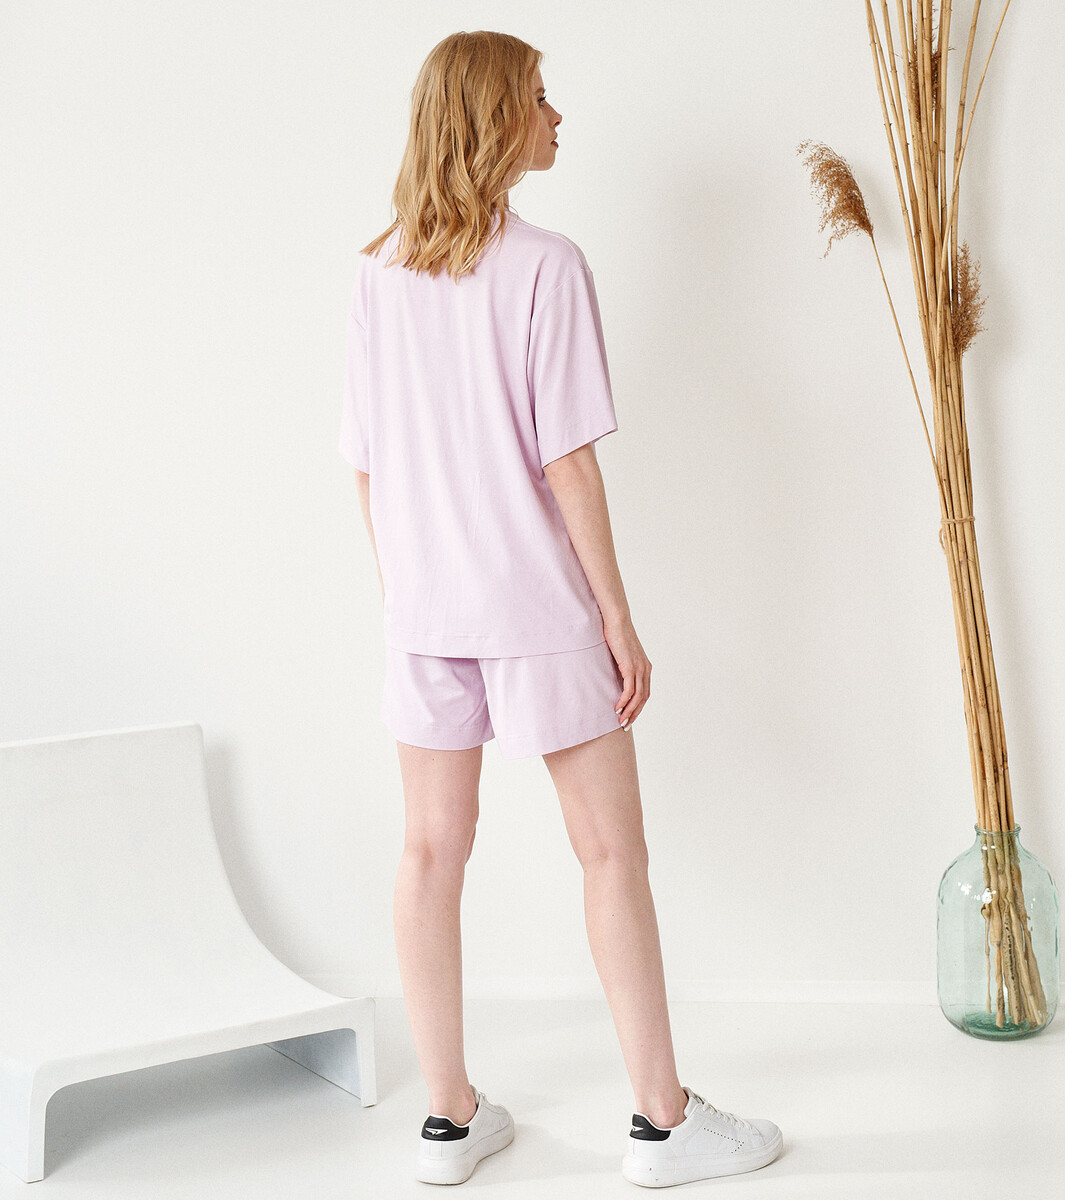 Комплект женский (джемпер, шорты) PANDA, размер 42, цвет фиолетовый 01130402 - фото 3